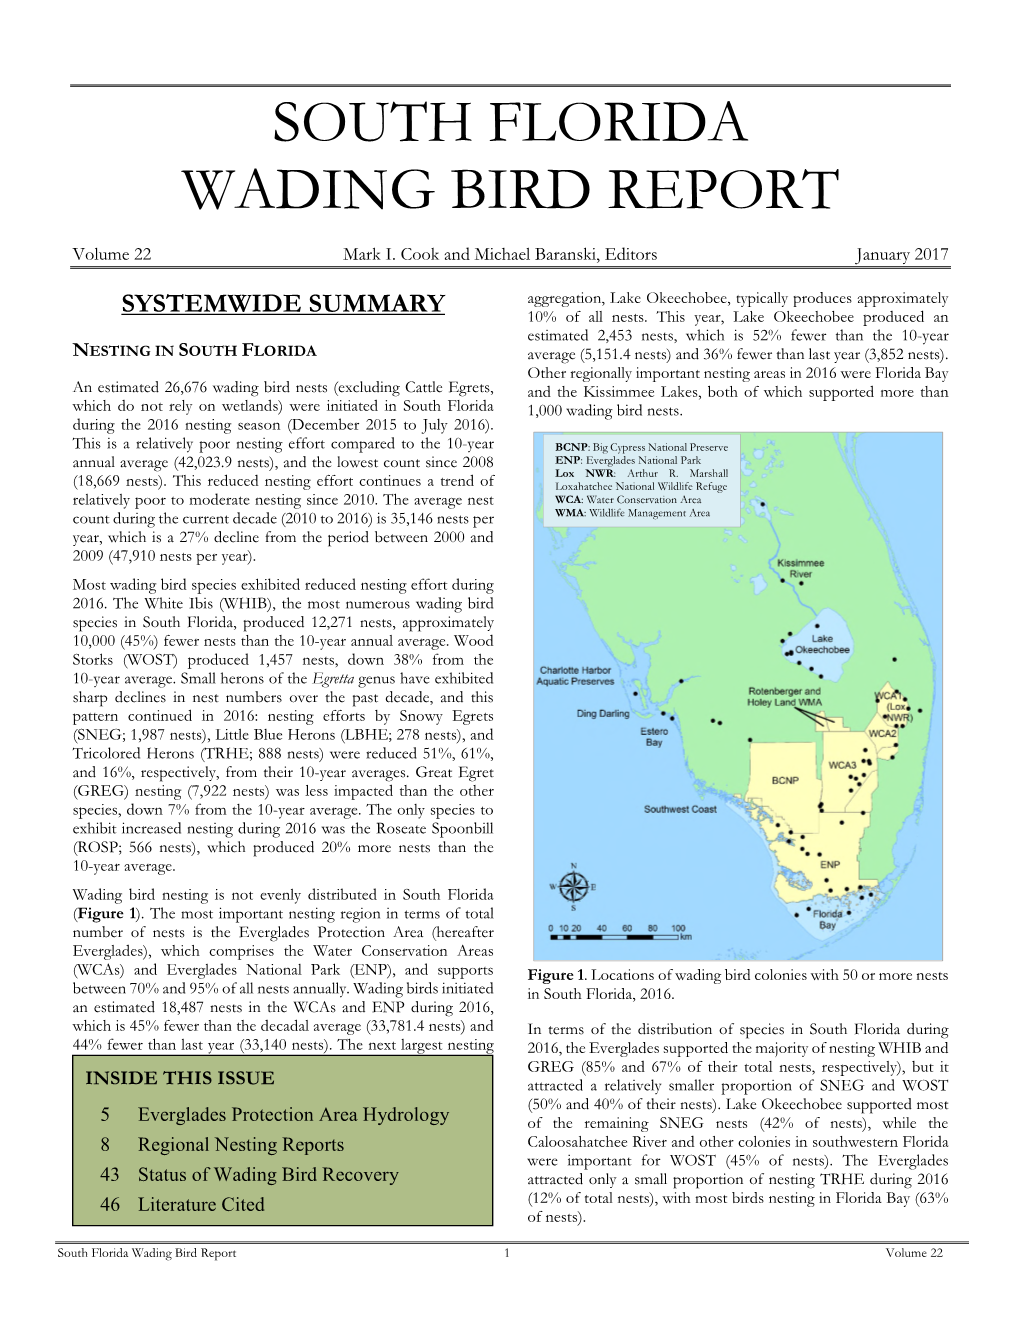 South Florida Wading Bird Report 2016